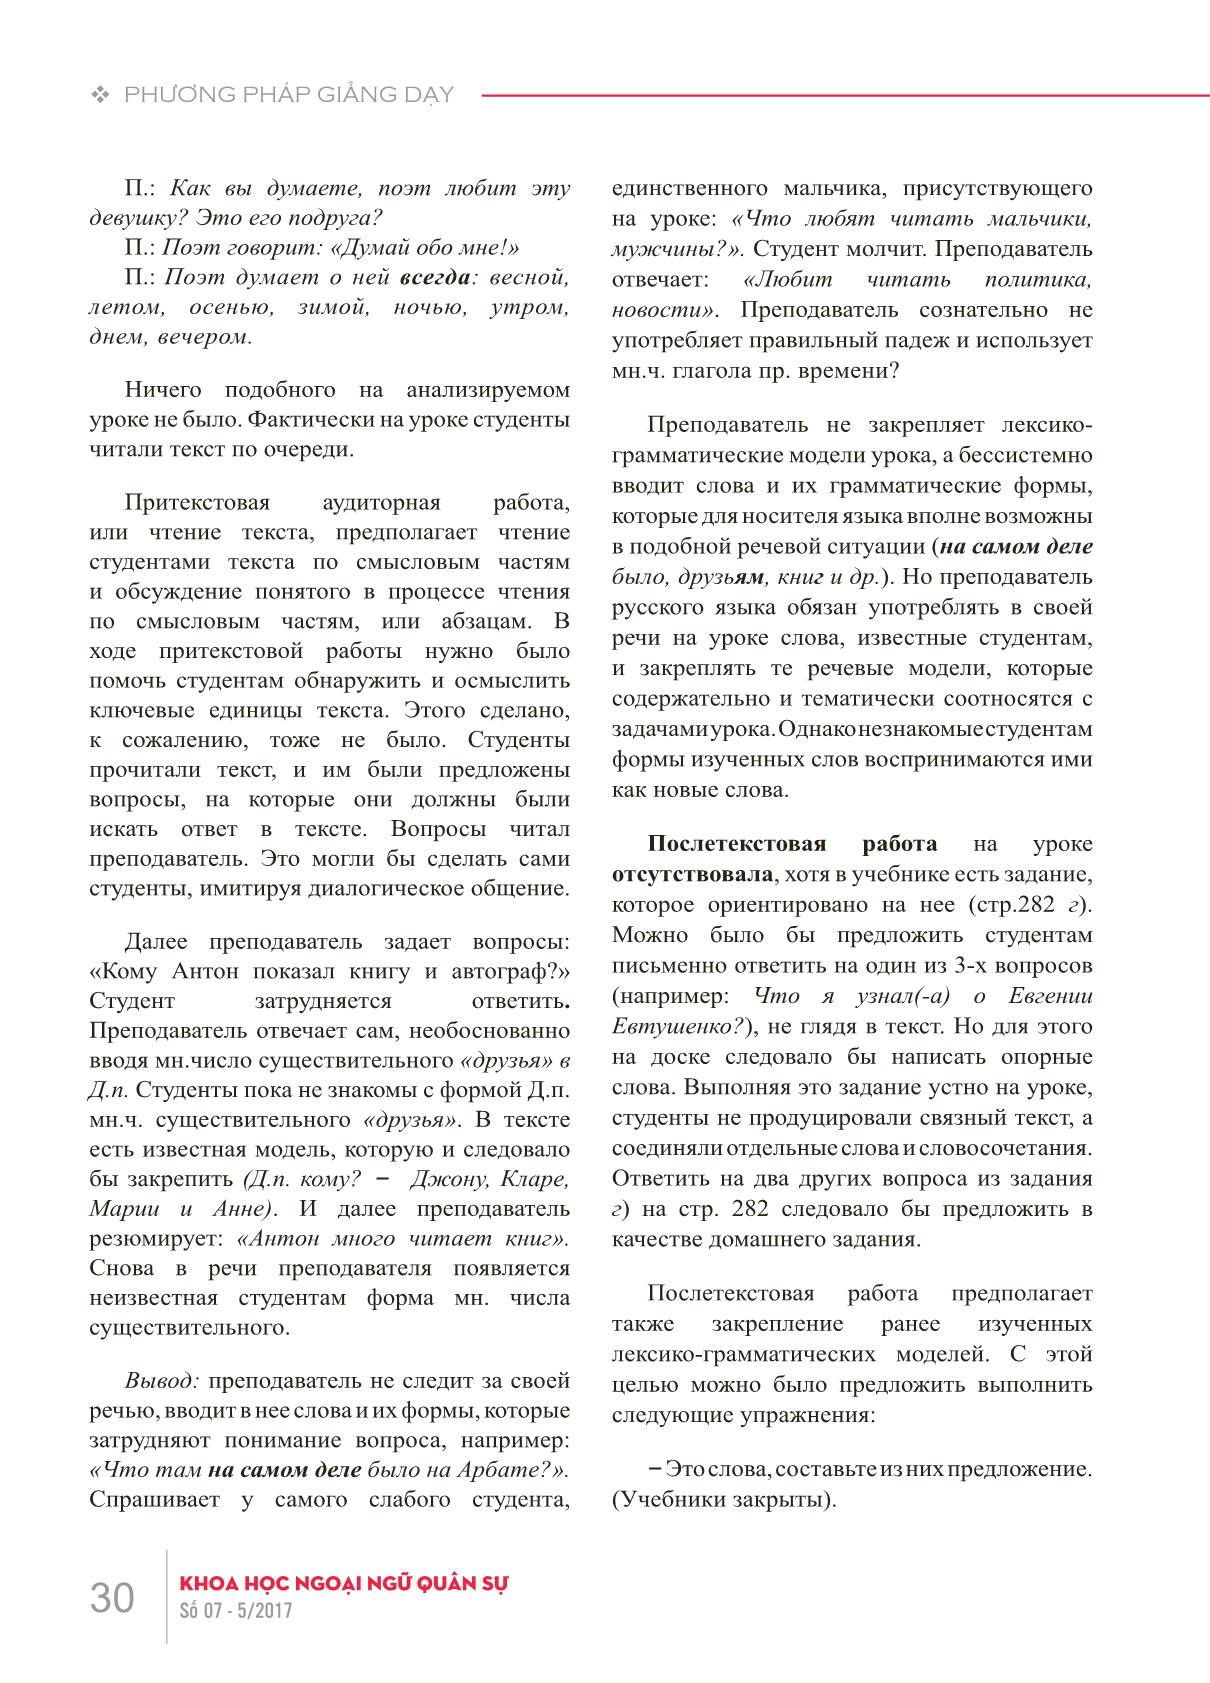 Các lỗi về phương pháp giảng dạy khi xử lý văn bản trong giờ dạy tiếng Nga như một ngoại ngữ trang 5